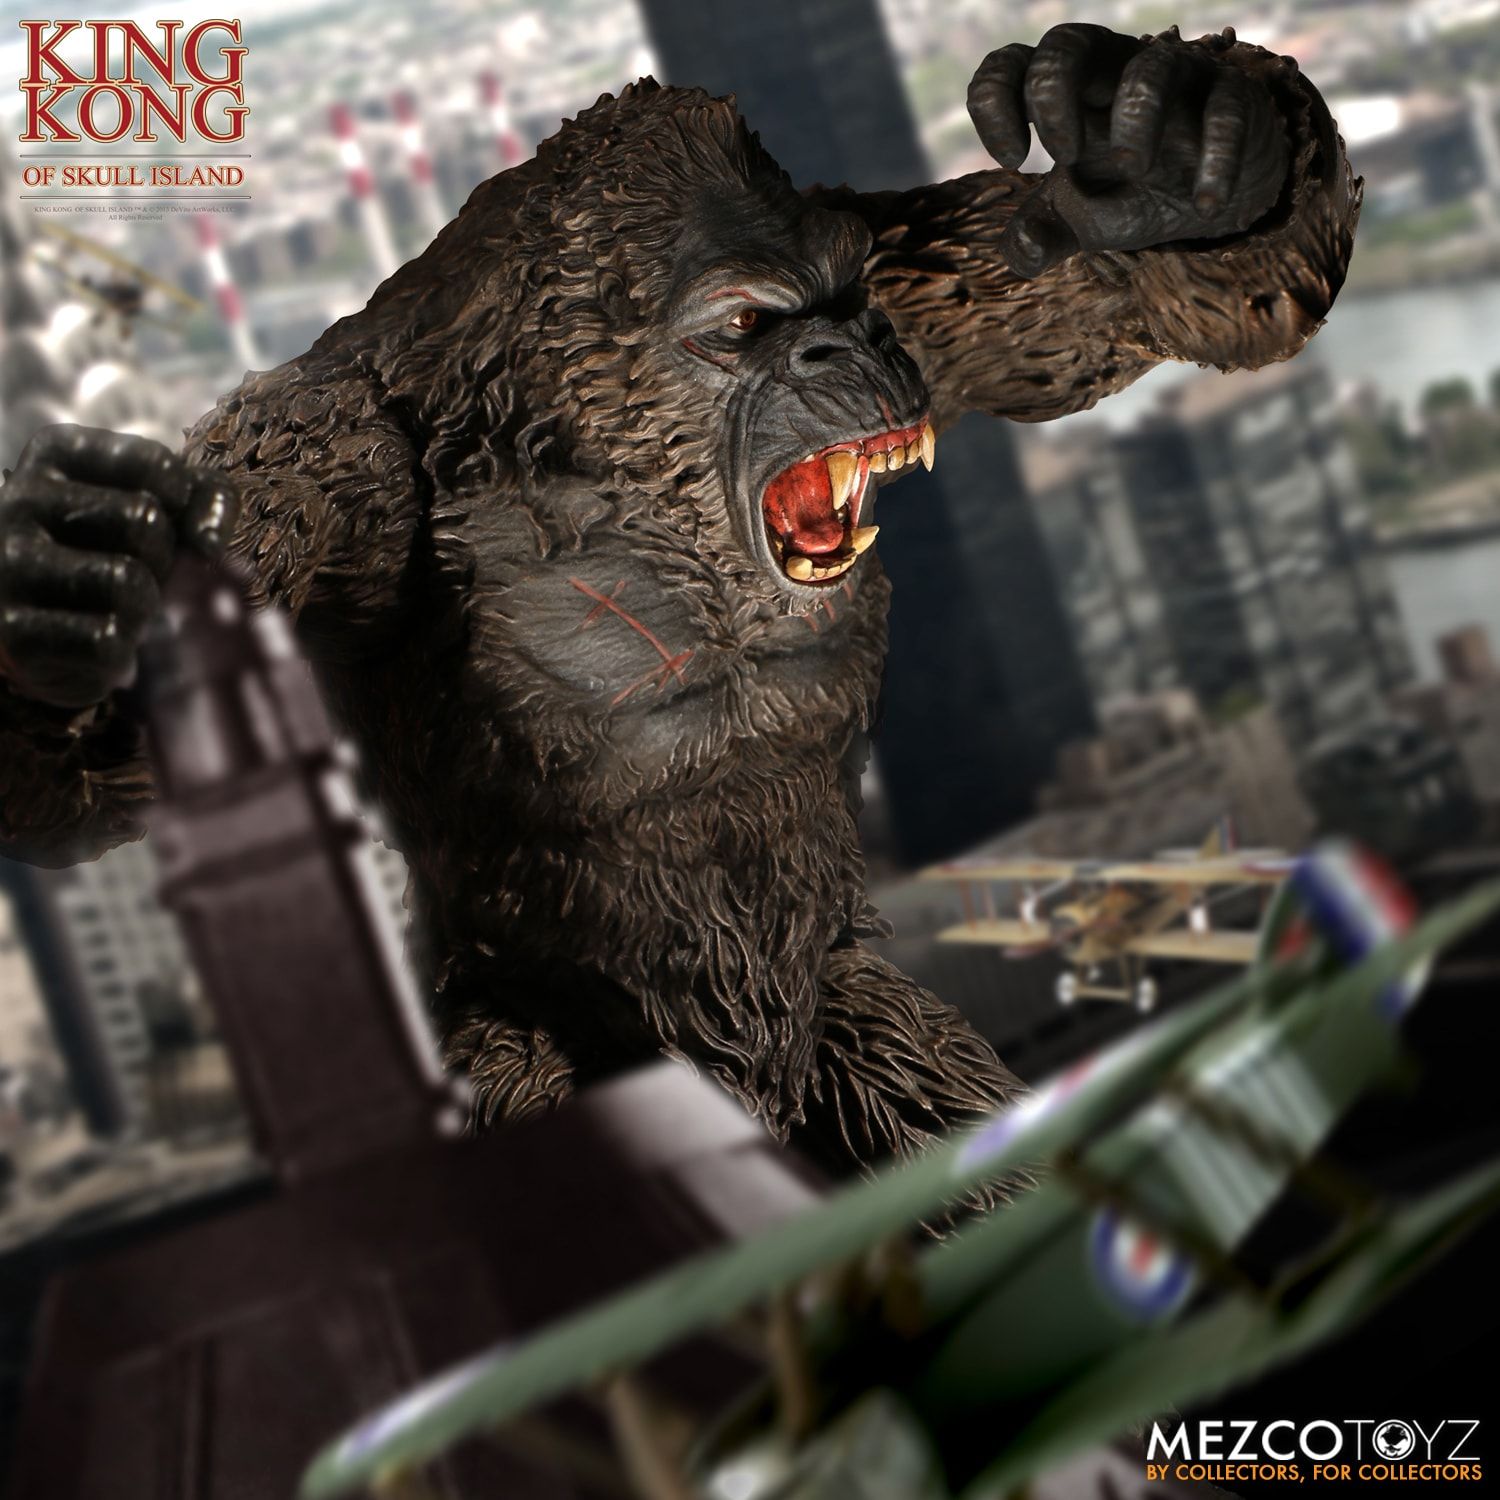 Mezco Kong 6